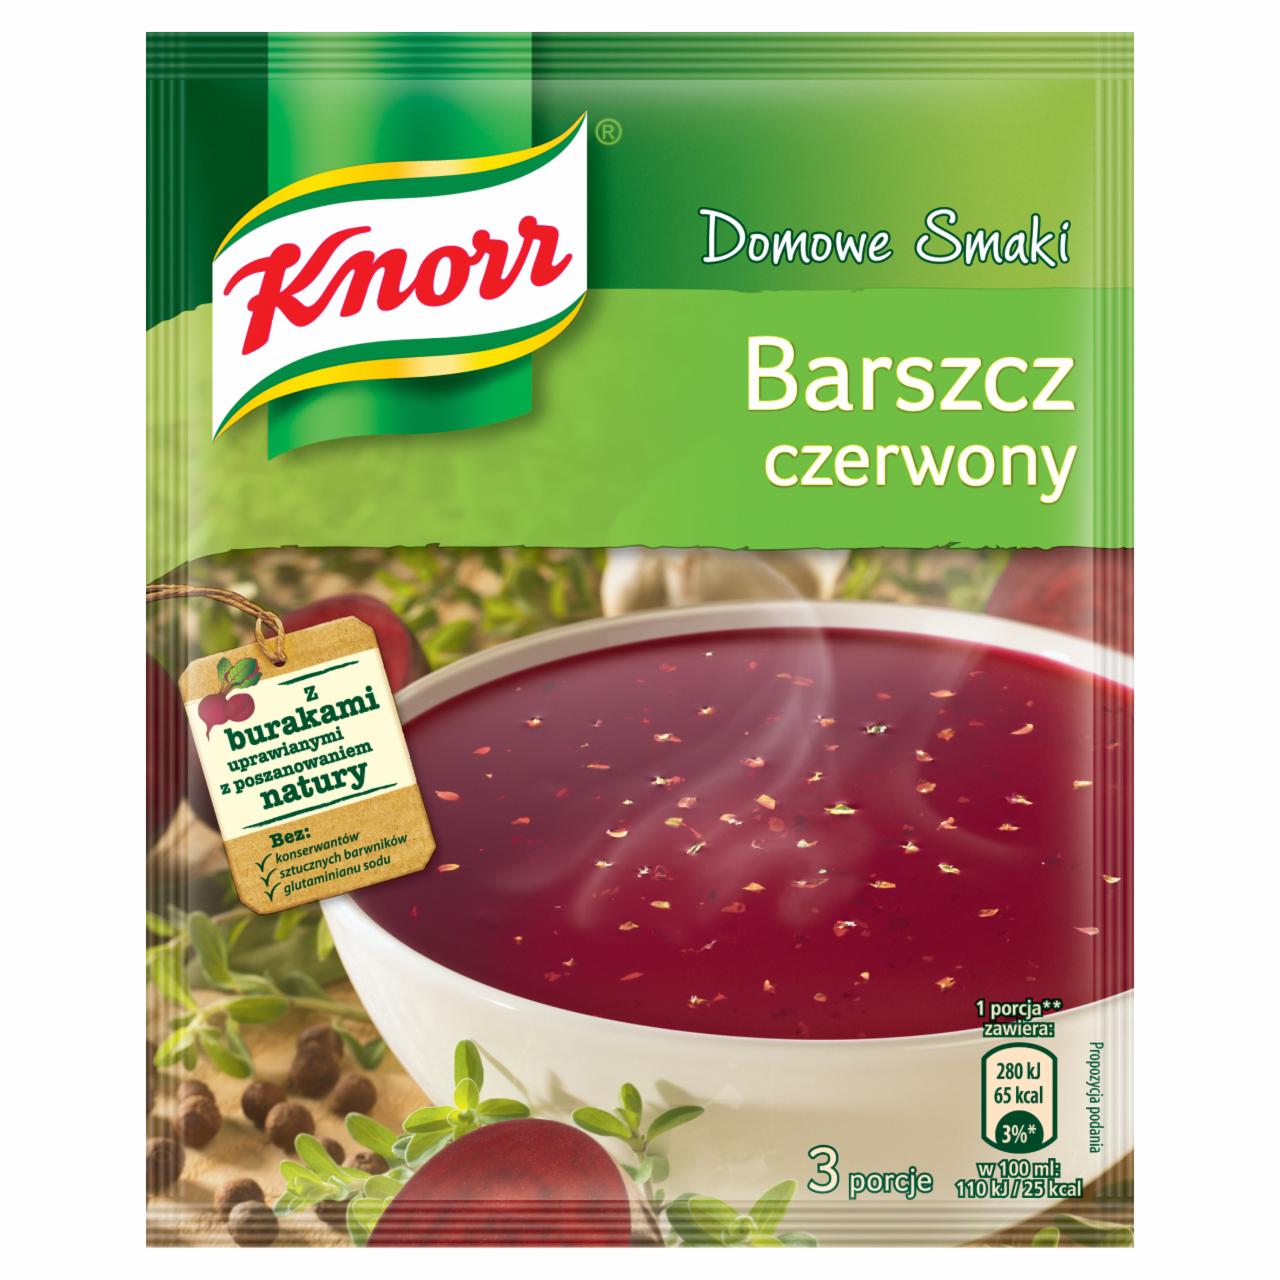 Zdjęcia - Knorr Domowe Smaki Barszcz czerwony 53 g